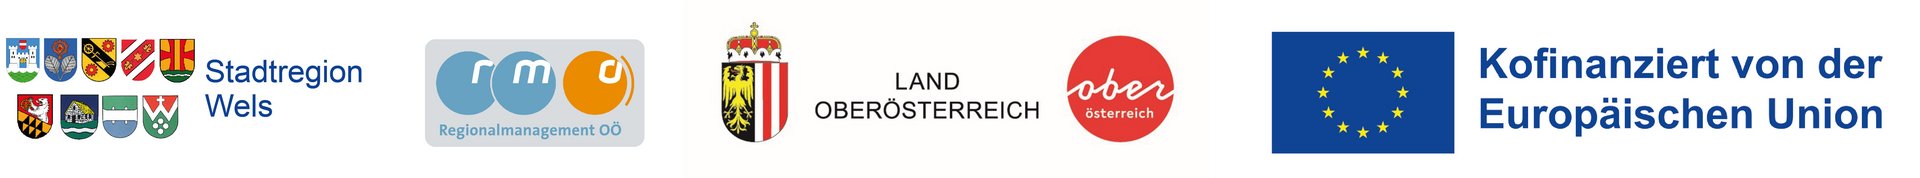 Logos Stadtregion Wels, Kofinanzierung durch EU, Land Obersterreich und Regionalmanagement